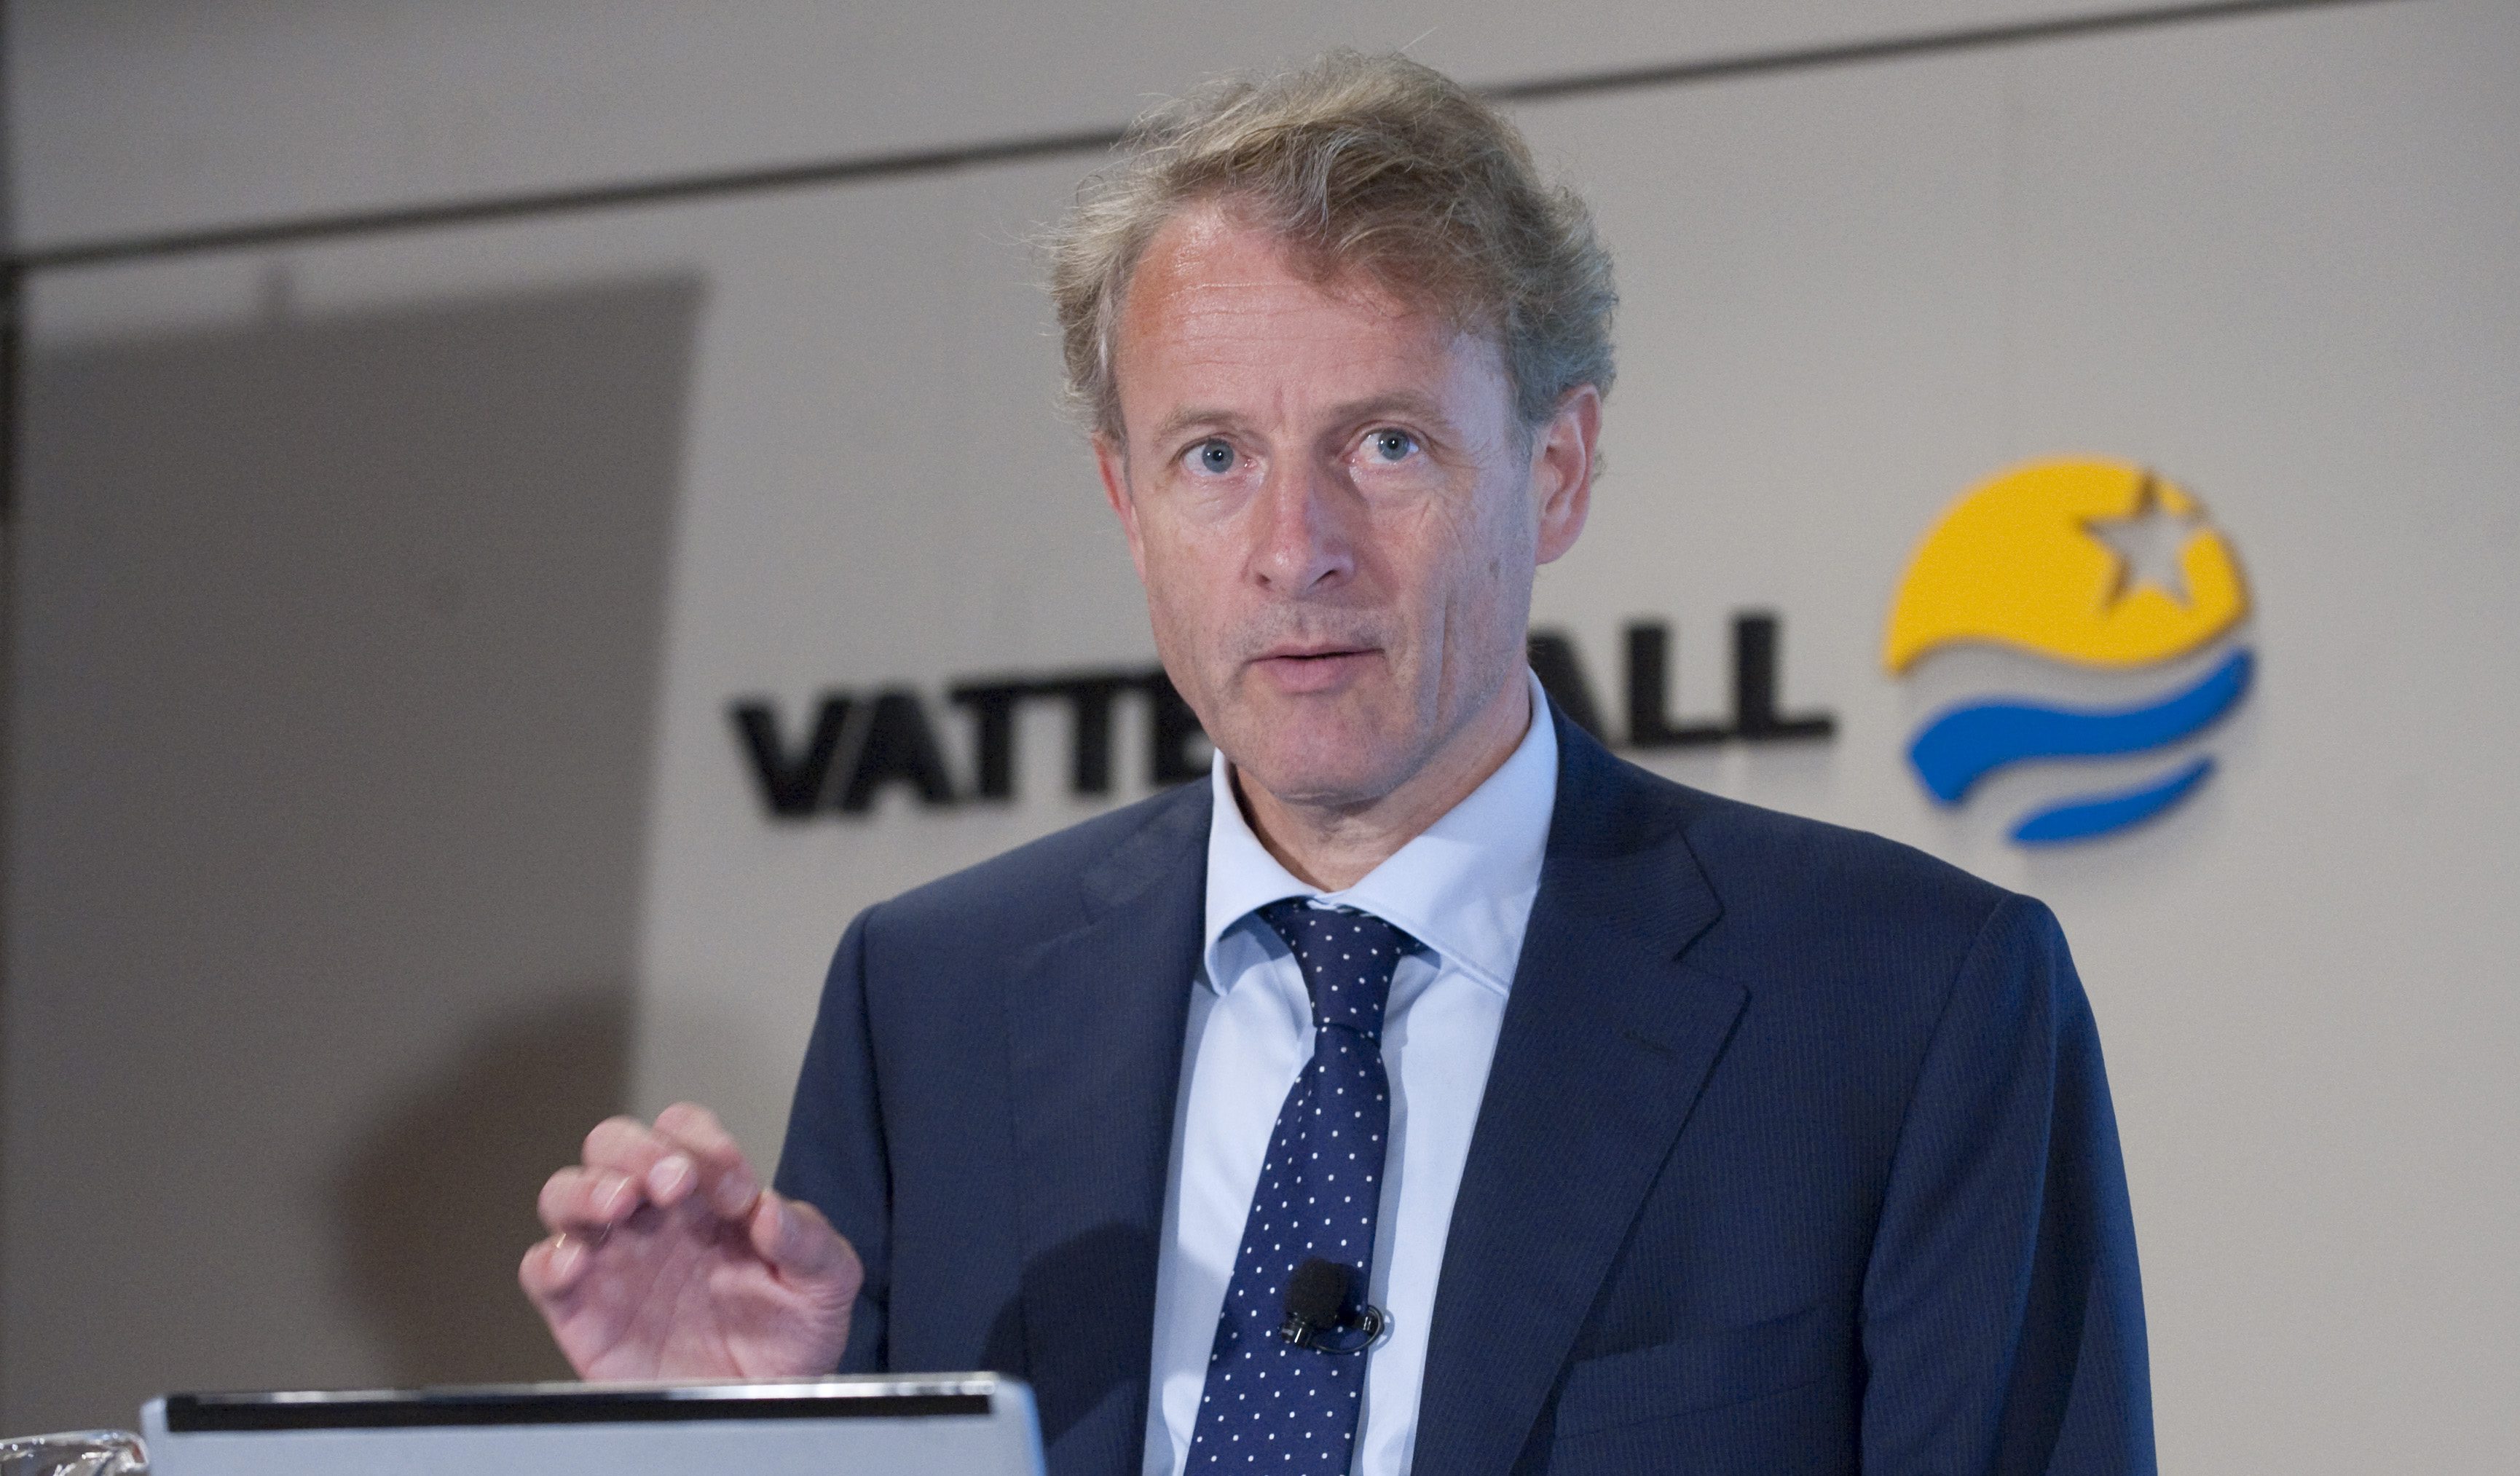 Vattenfalls koncernchef Øystein Løseth. Hans företag öppnar nu för nya reaktorer i Sverige - men har lämnat olika besked de senaste åren.